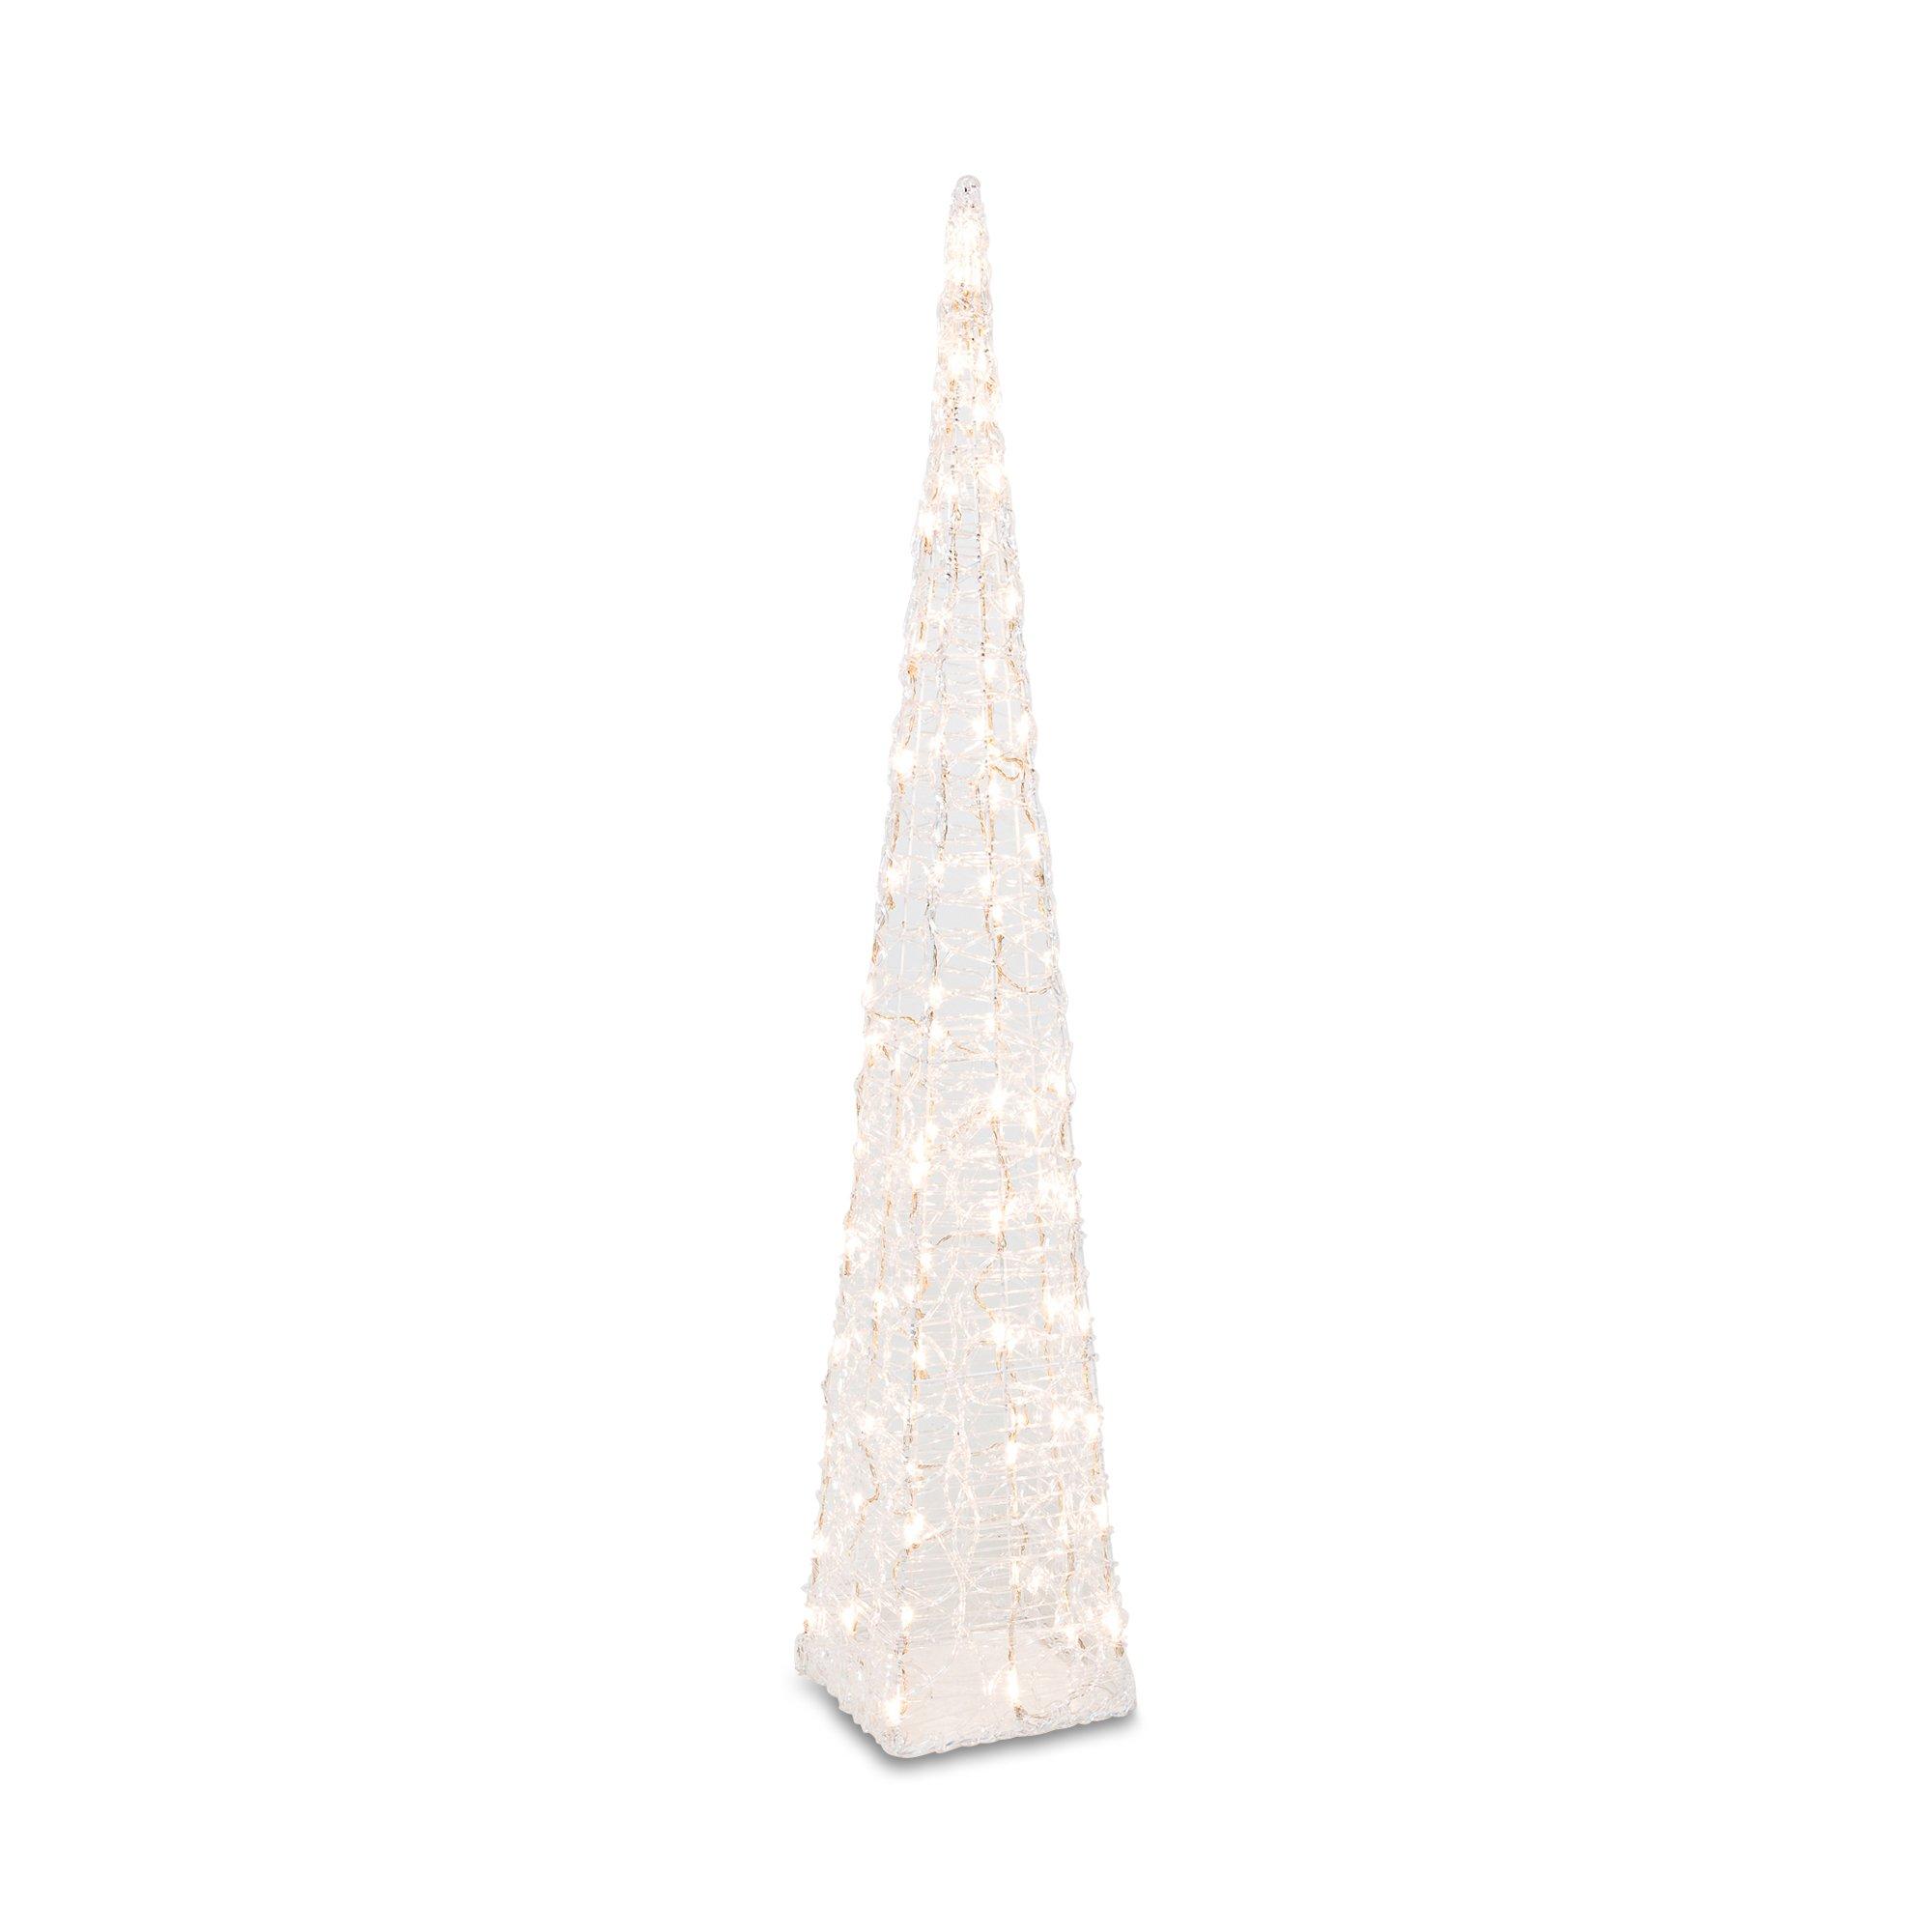 NA LED Dekorationsartikel LED Pyramide H118cm | online kaufen - MANOR